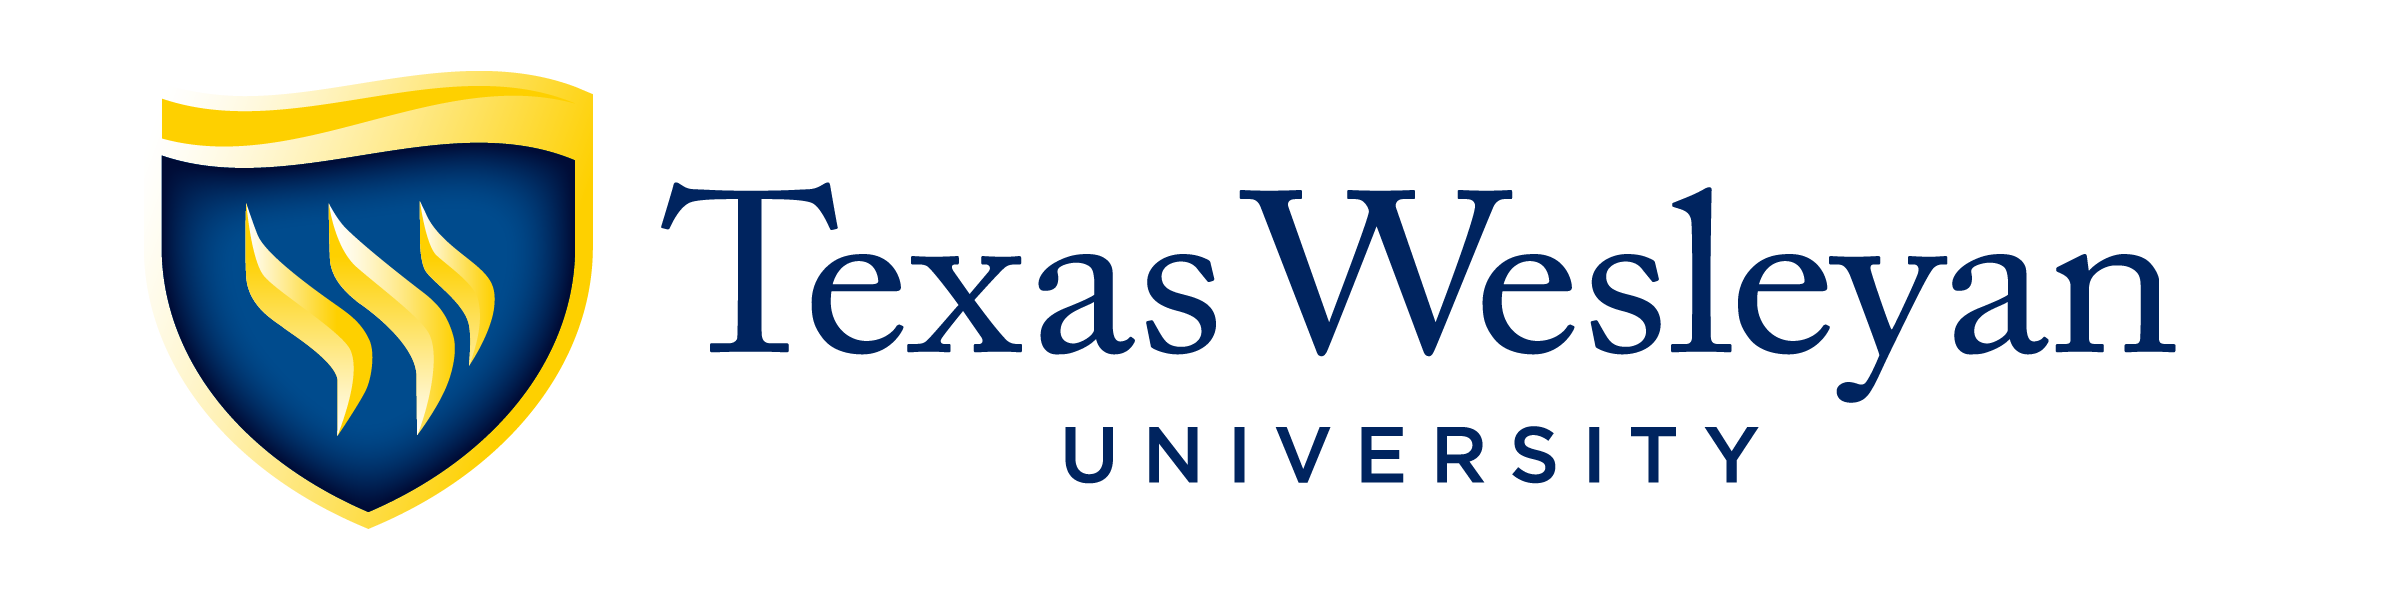 Texas Wesleyan University Graduate Programs Of Nurse Anesthesia